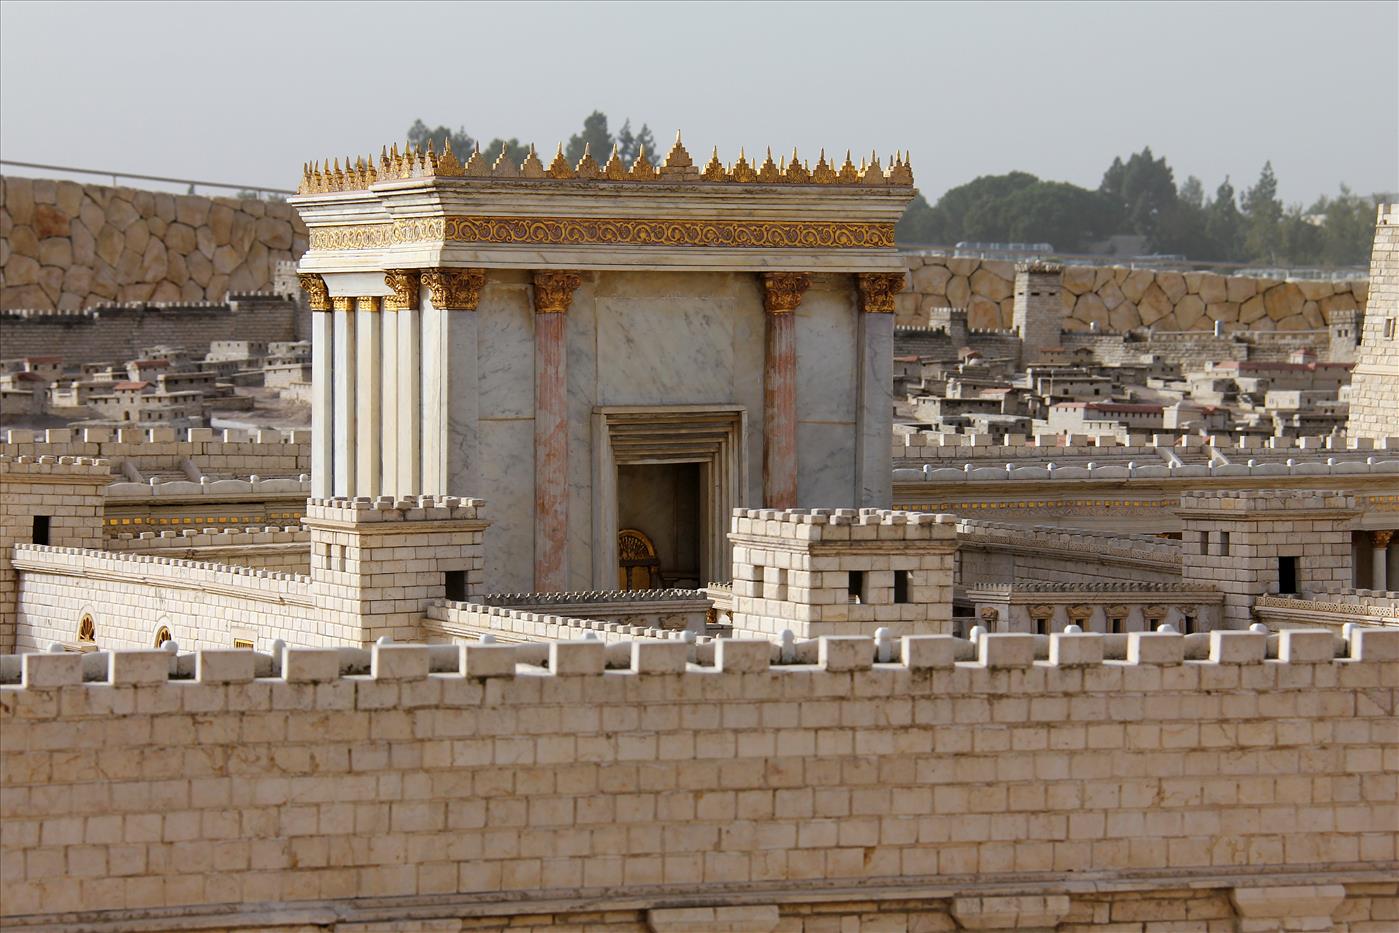 דגם בית המקדש במלון "הולילנד" בירושלים